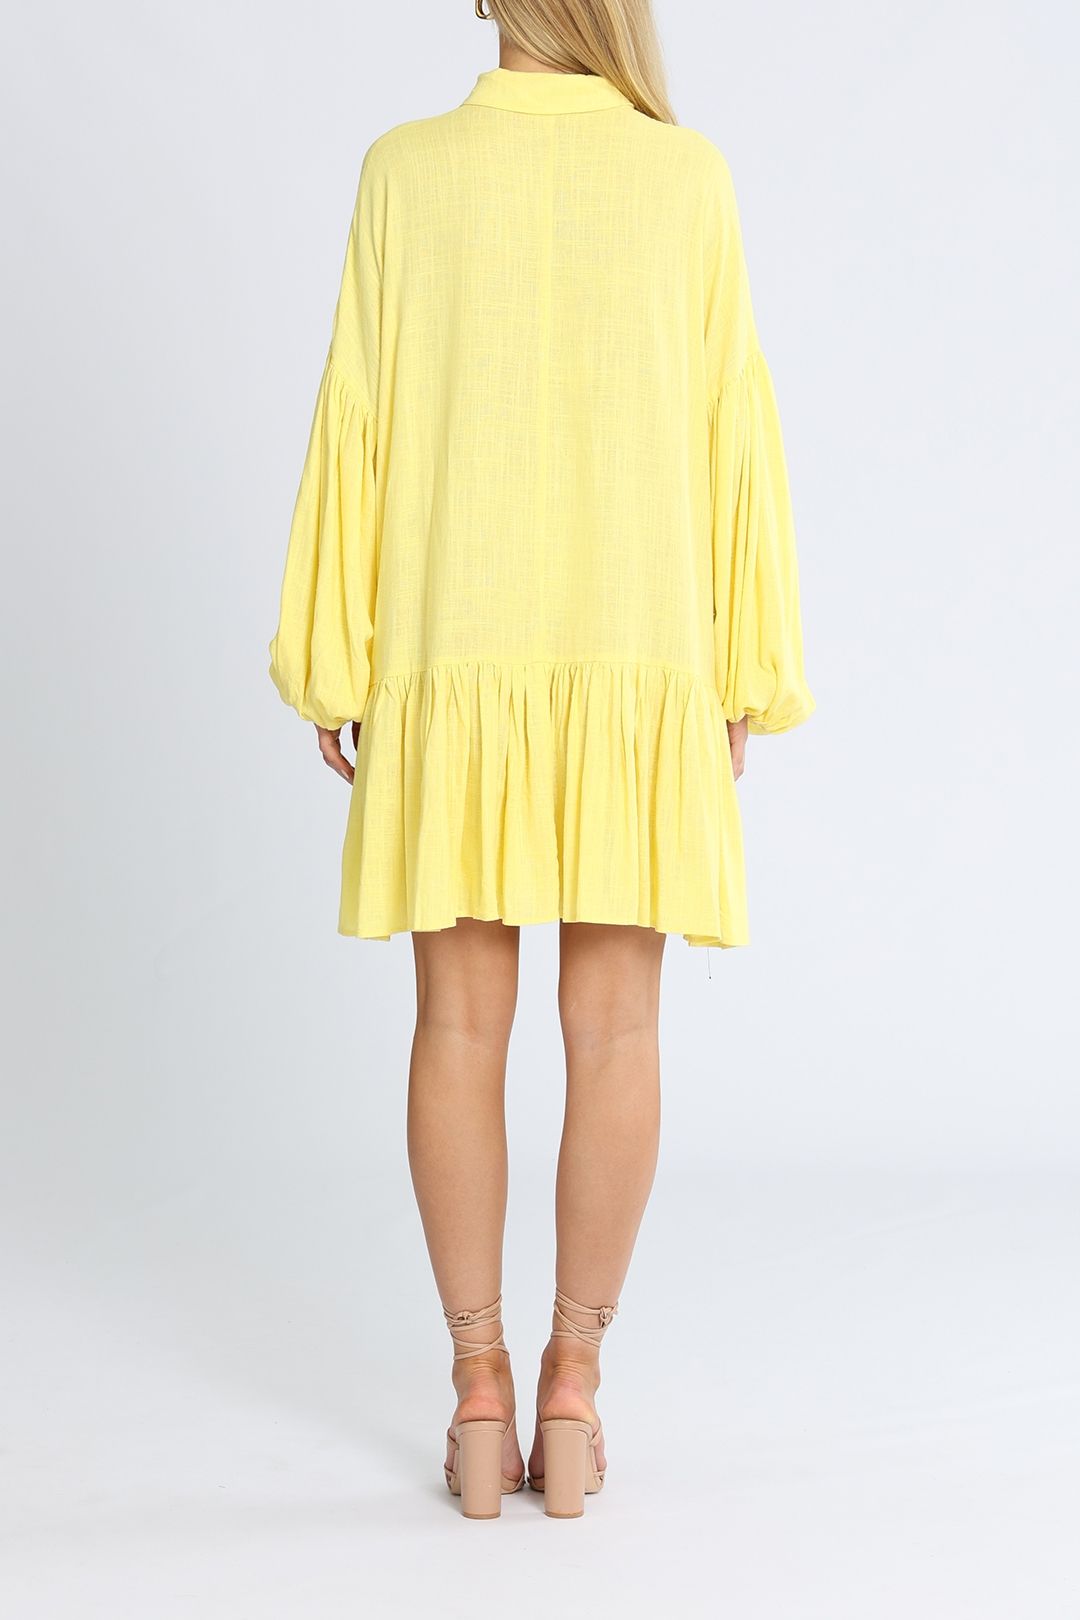 Bohemian Traders Mini Shirt Dress Yellow Long Seeve